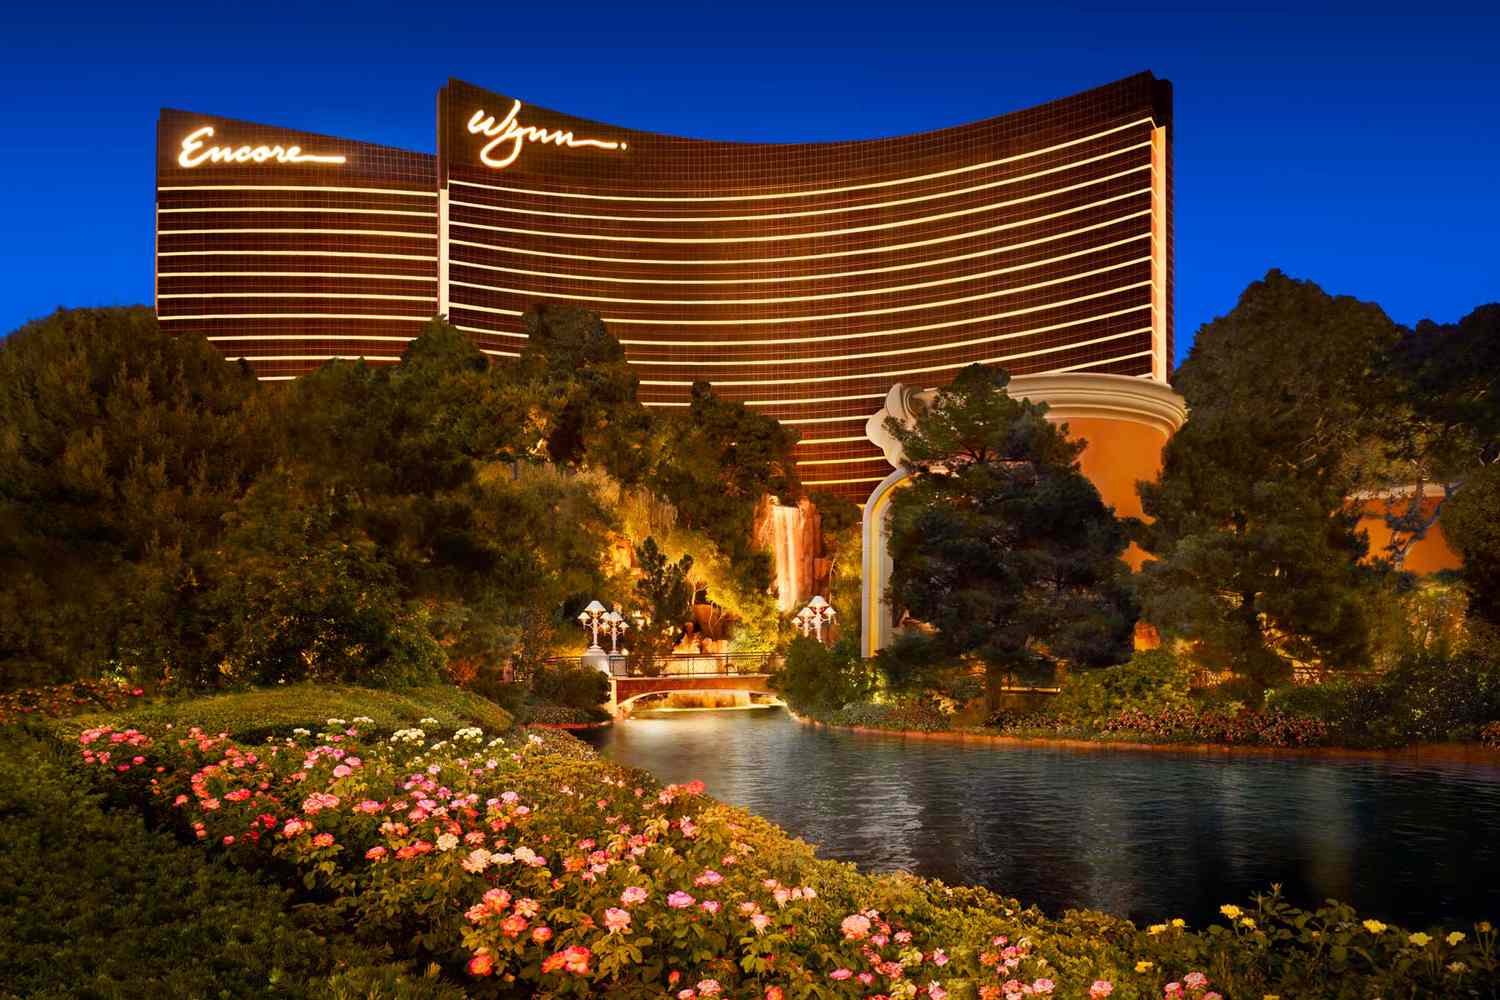 The Art of Luxury: Wynn Las Vegas Hotel Review